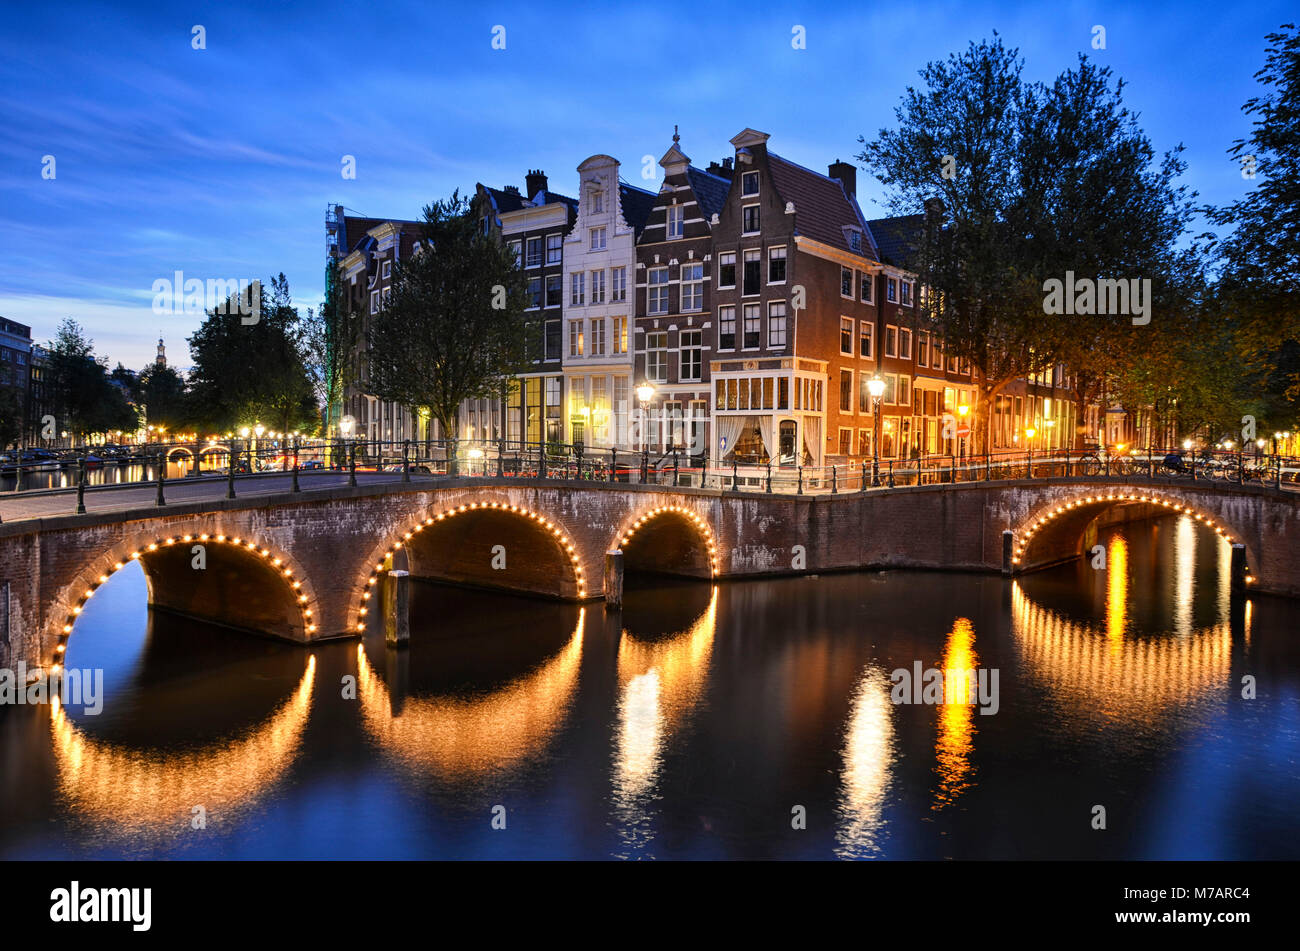 Scène de nuit à un canal avec des bâtiments traditionnels et un pont en arc à Amsterdam, Pays-Bas Banque D'Images